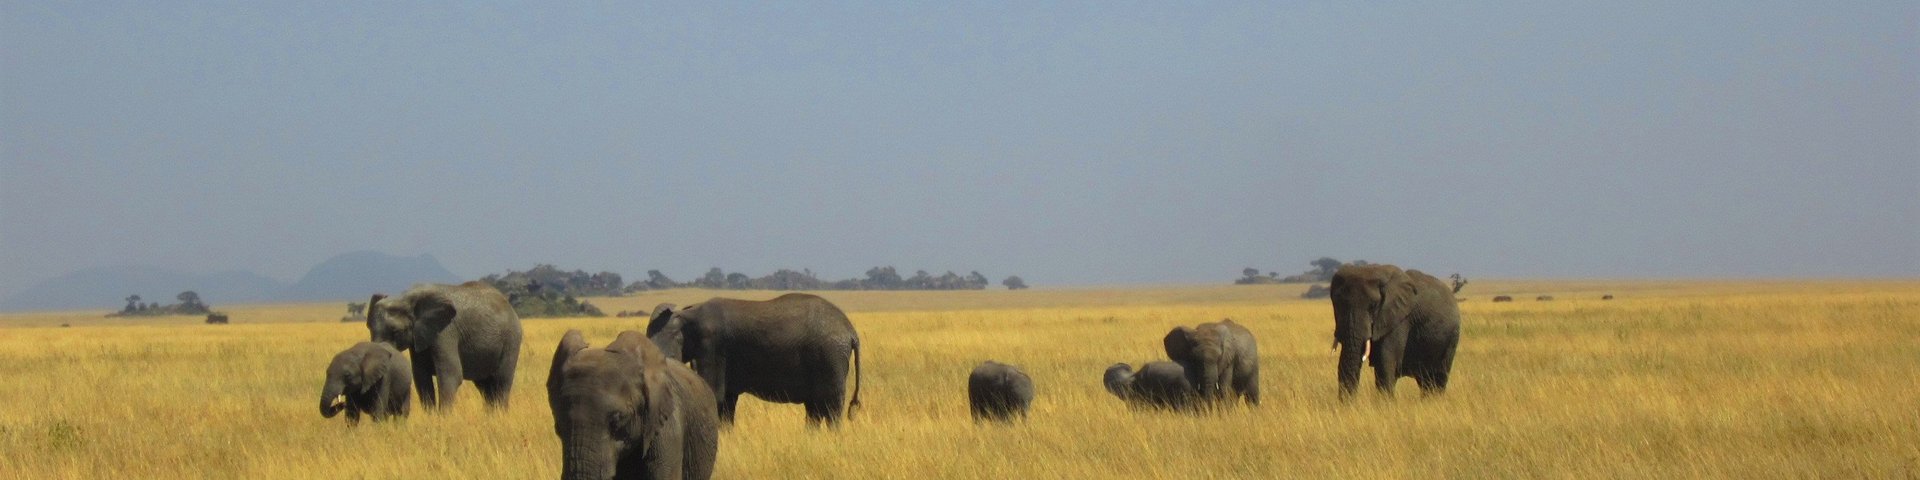 Eine Gruppe Elefanten im Naturschutzgebiet Masai Mara in Kenia